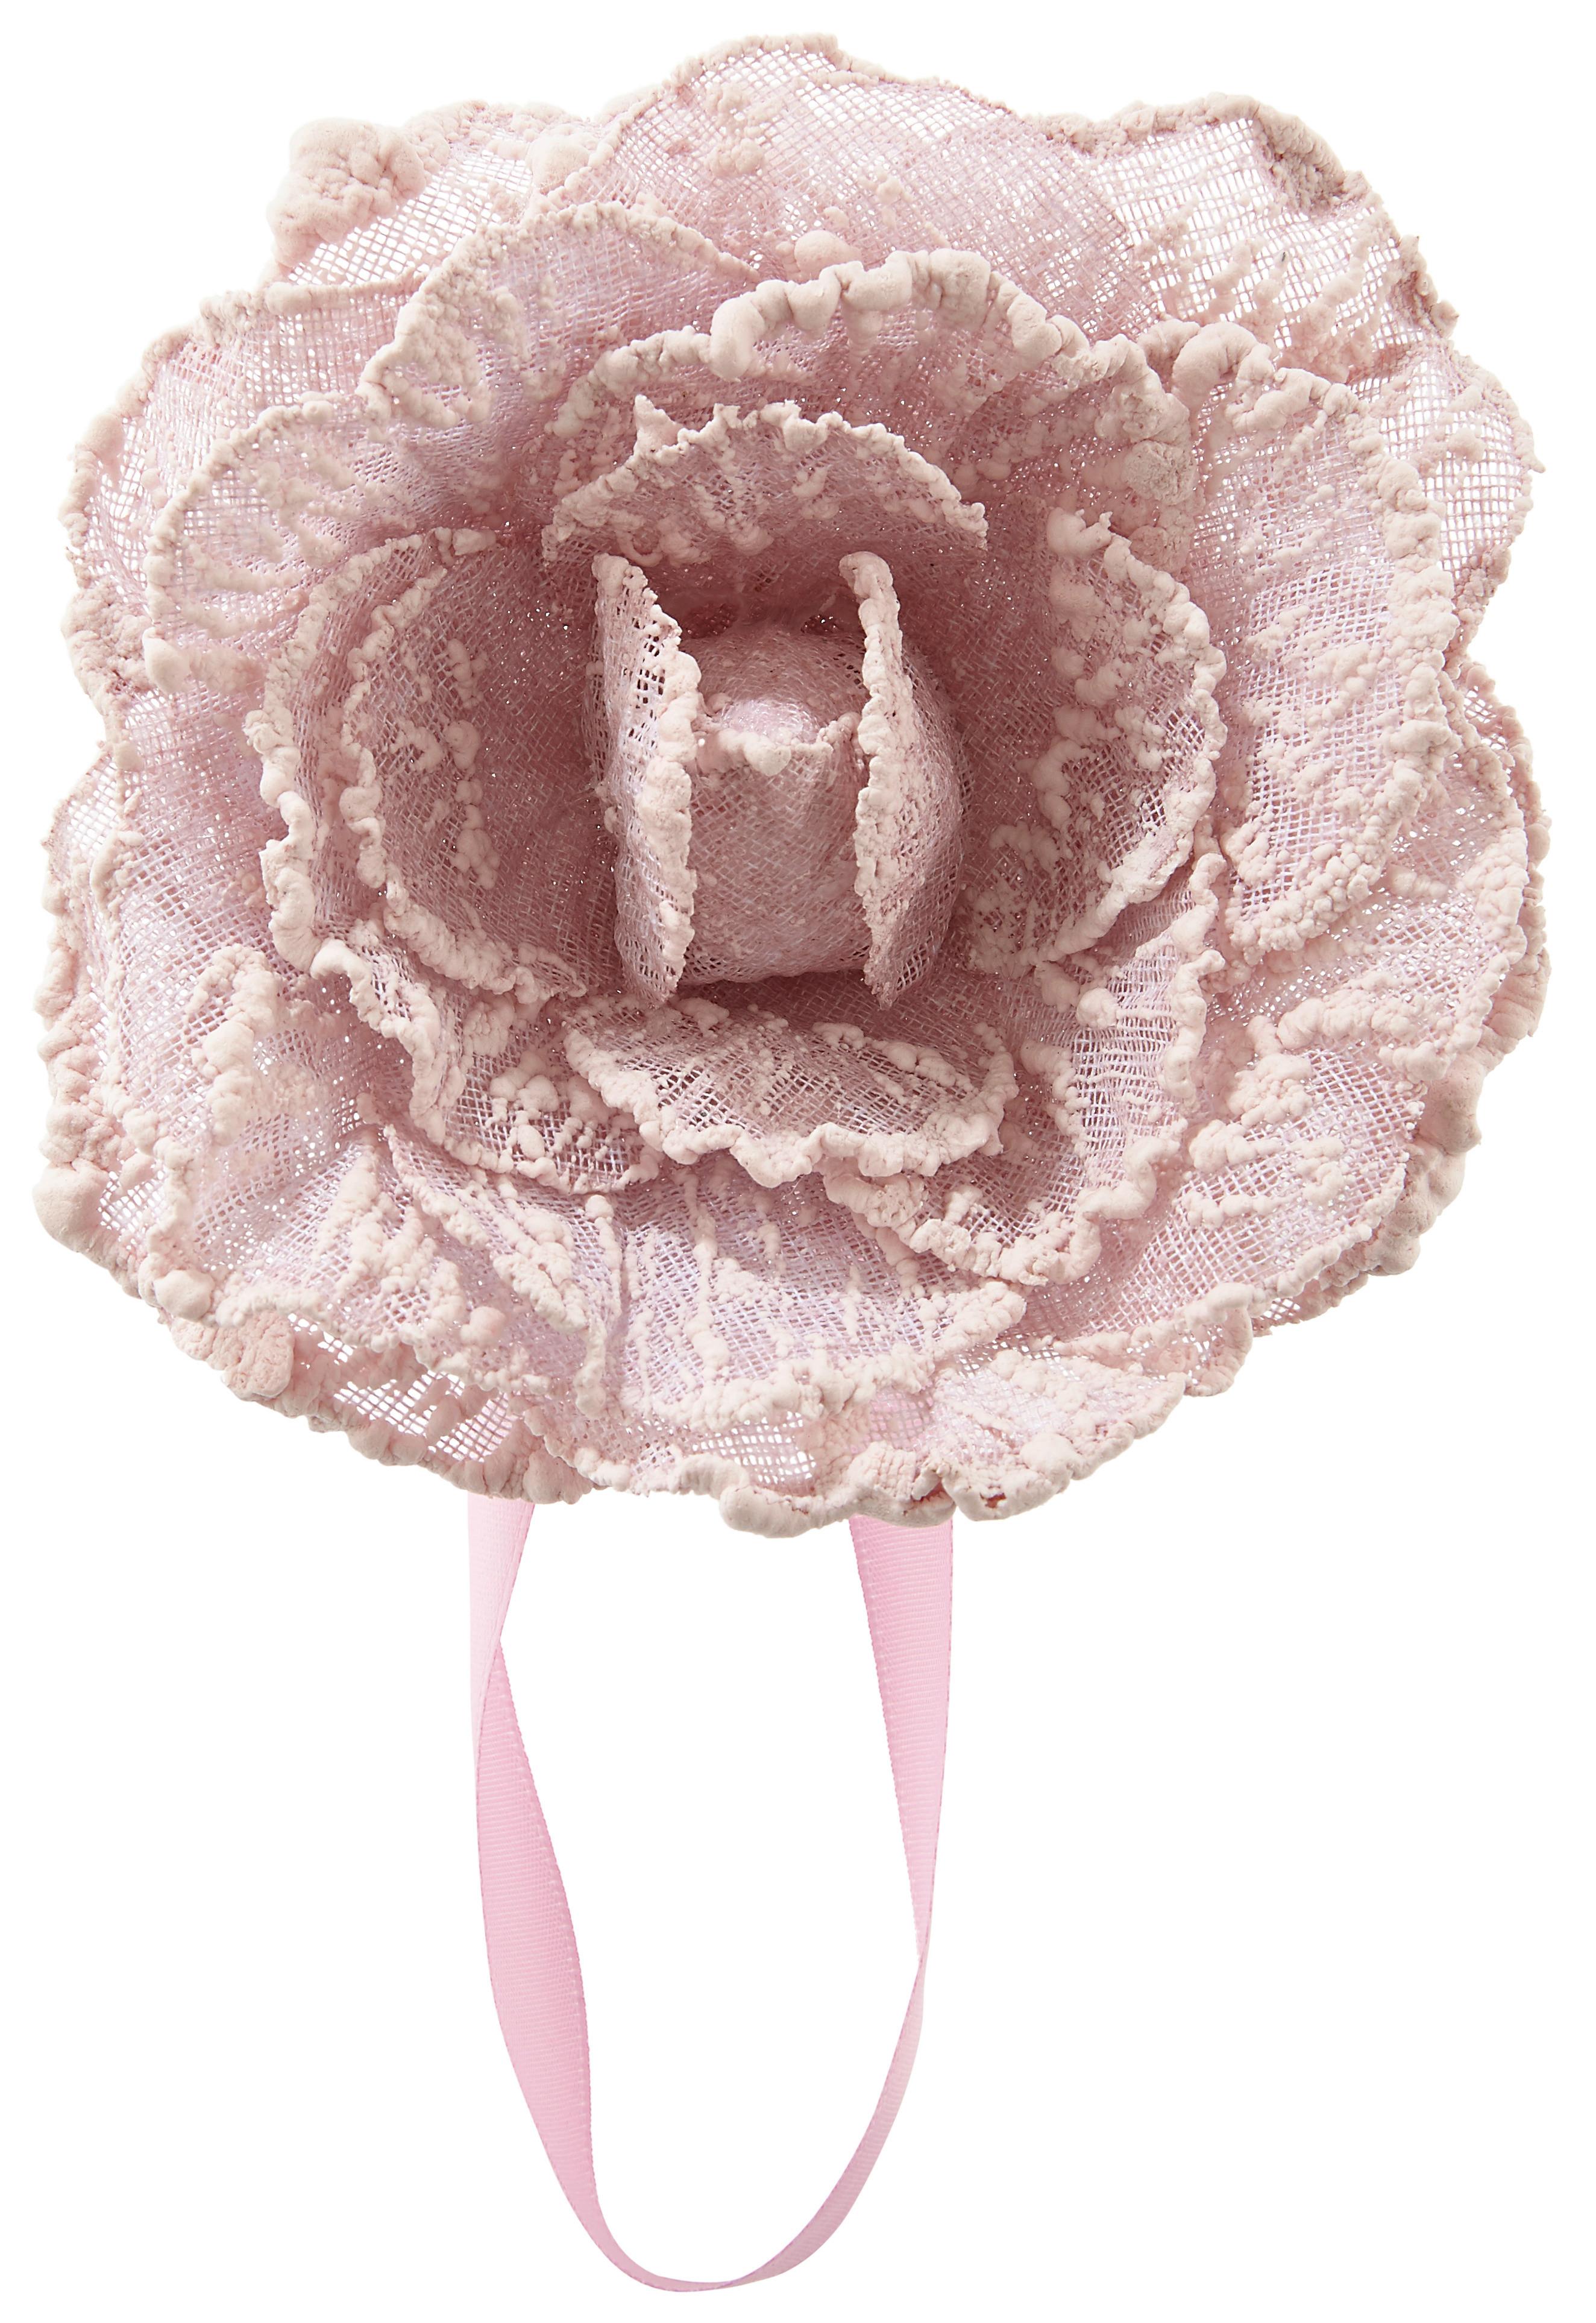 Spona Na Záves Rose - ružová, Romantický / Vidiecky, textil (11cm) - Modern Living